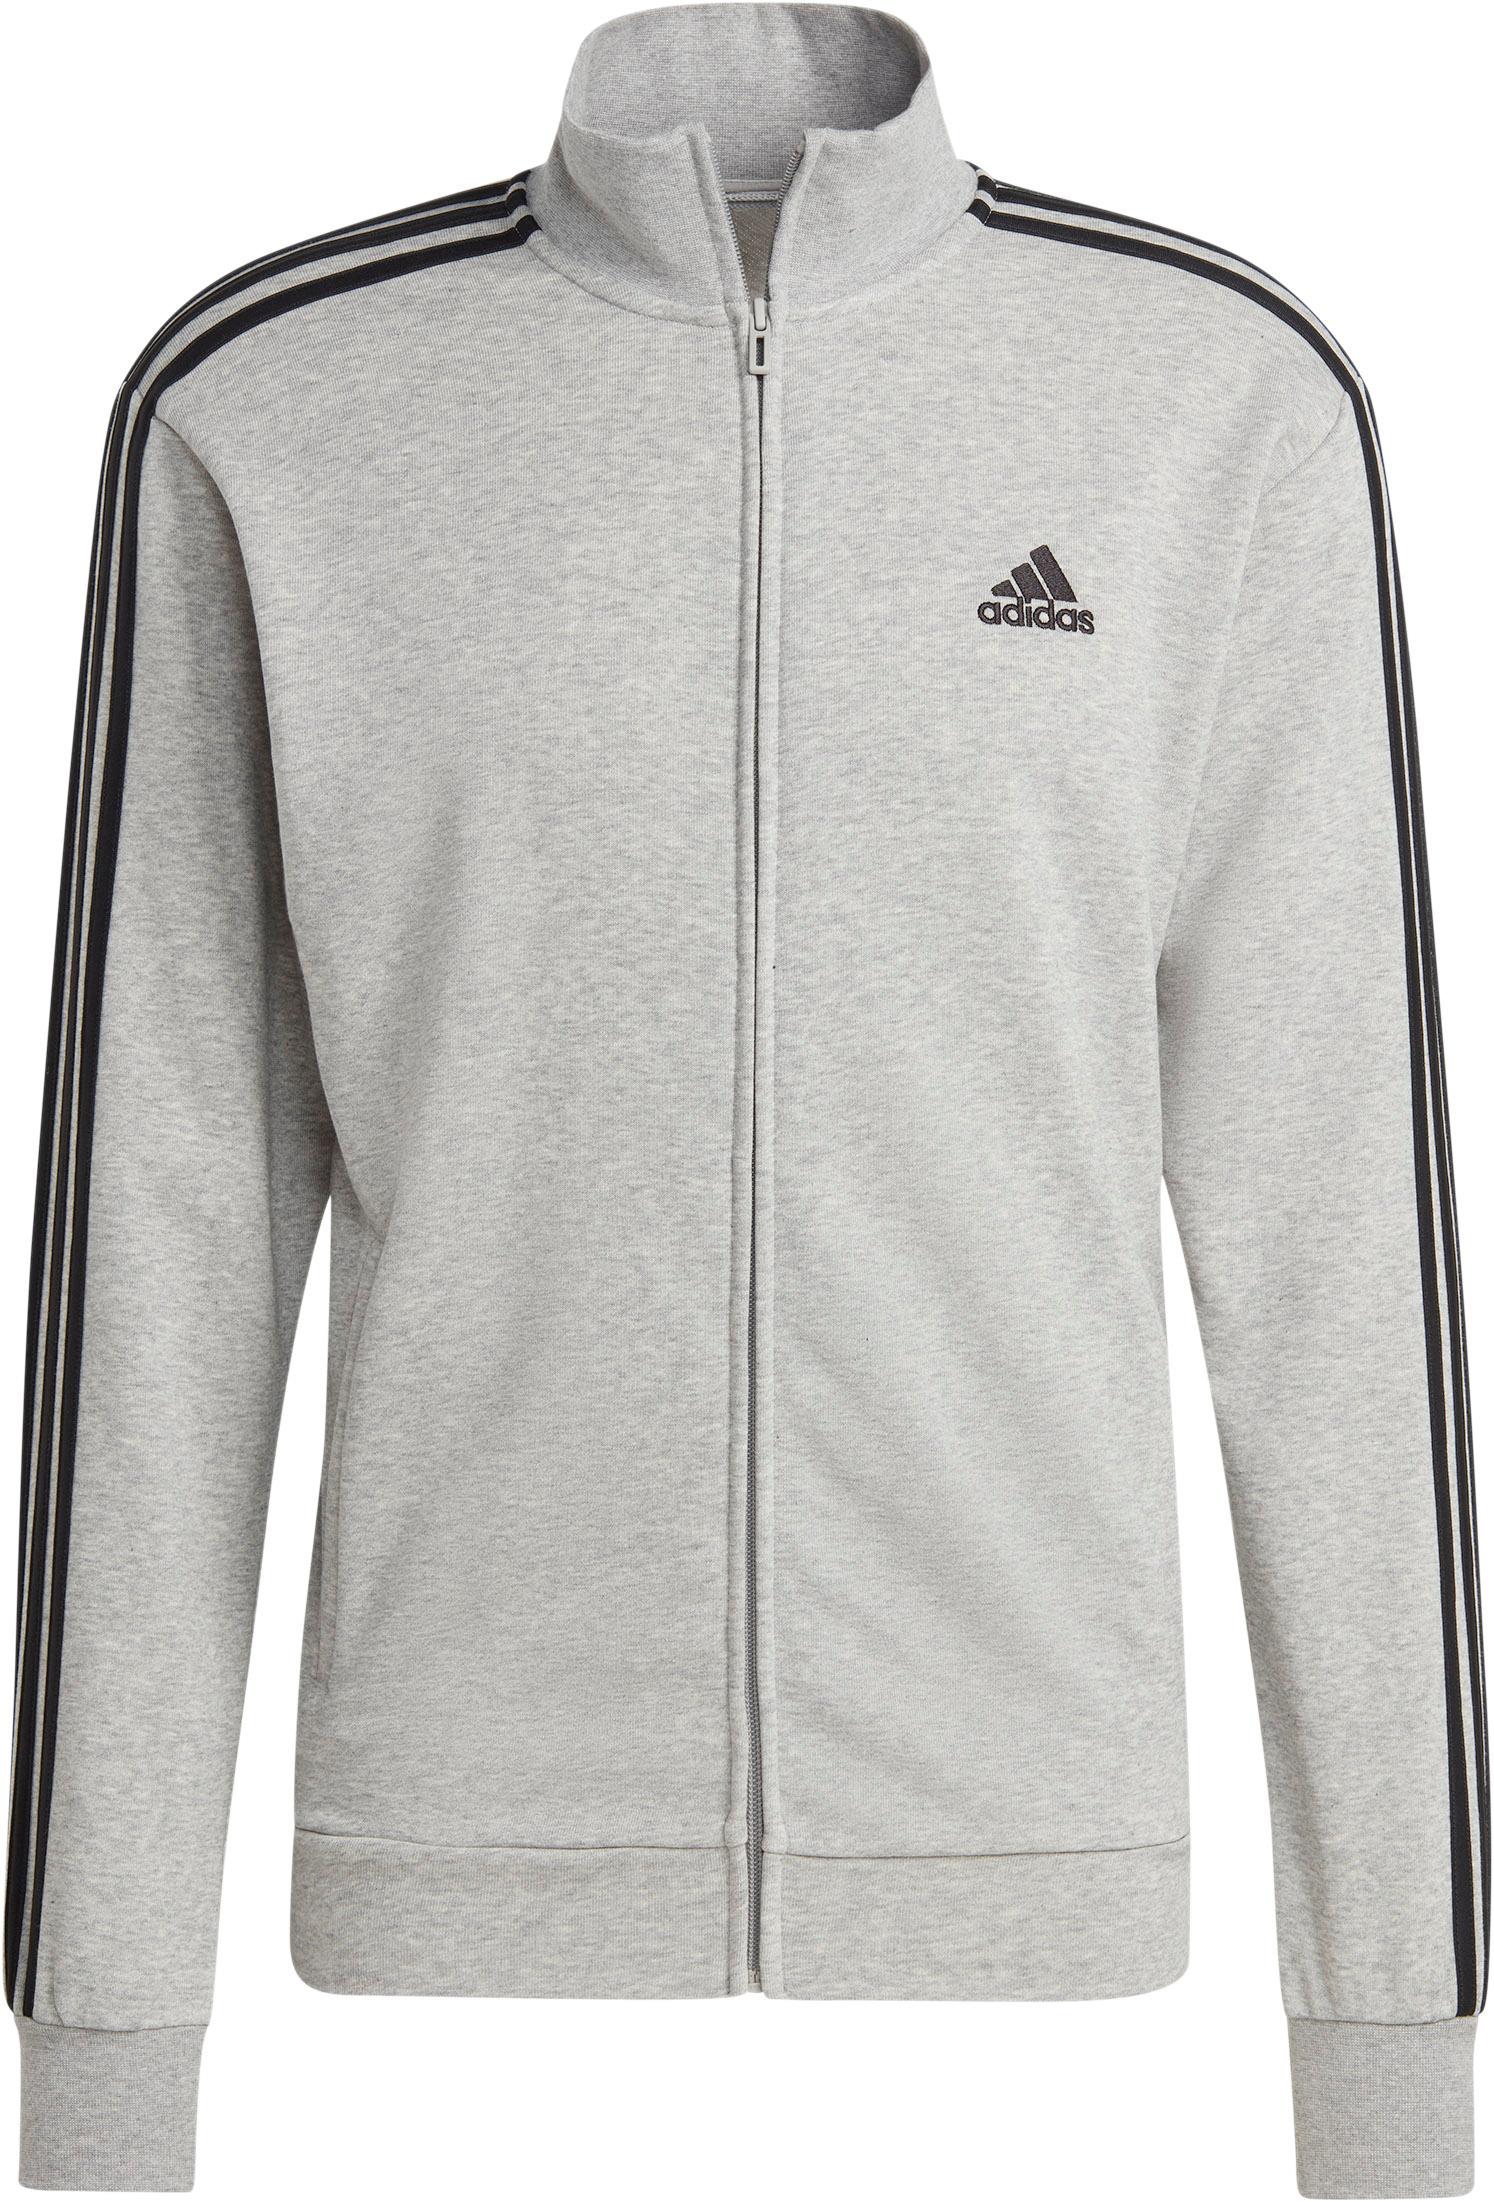 von im FRENCH TERRY Trainingsanzug kaufen grey medium BASIC SportScheck 3-STREIFEN Herren Online Adidas Shop heather-black